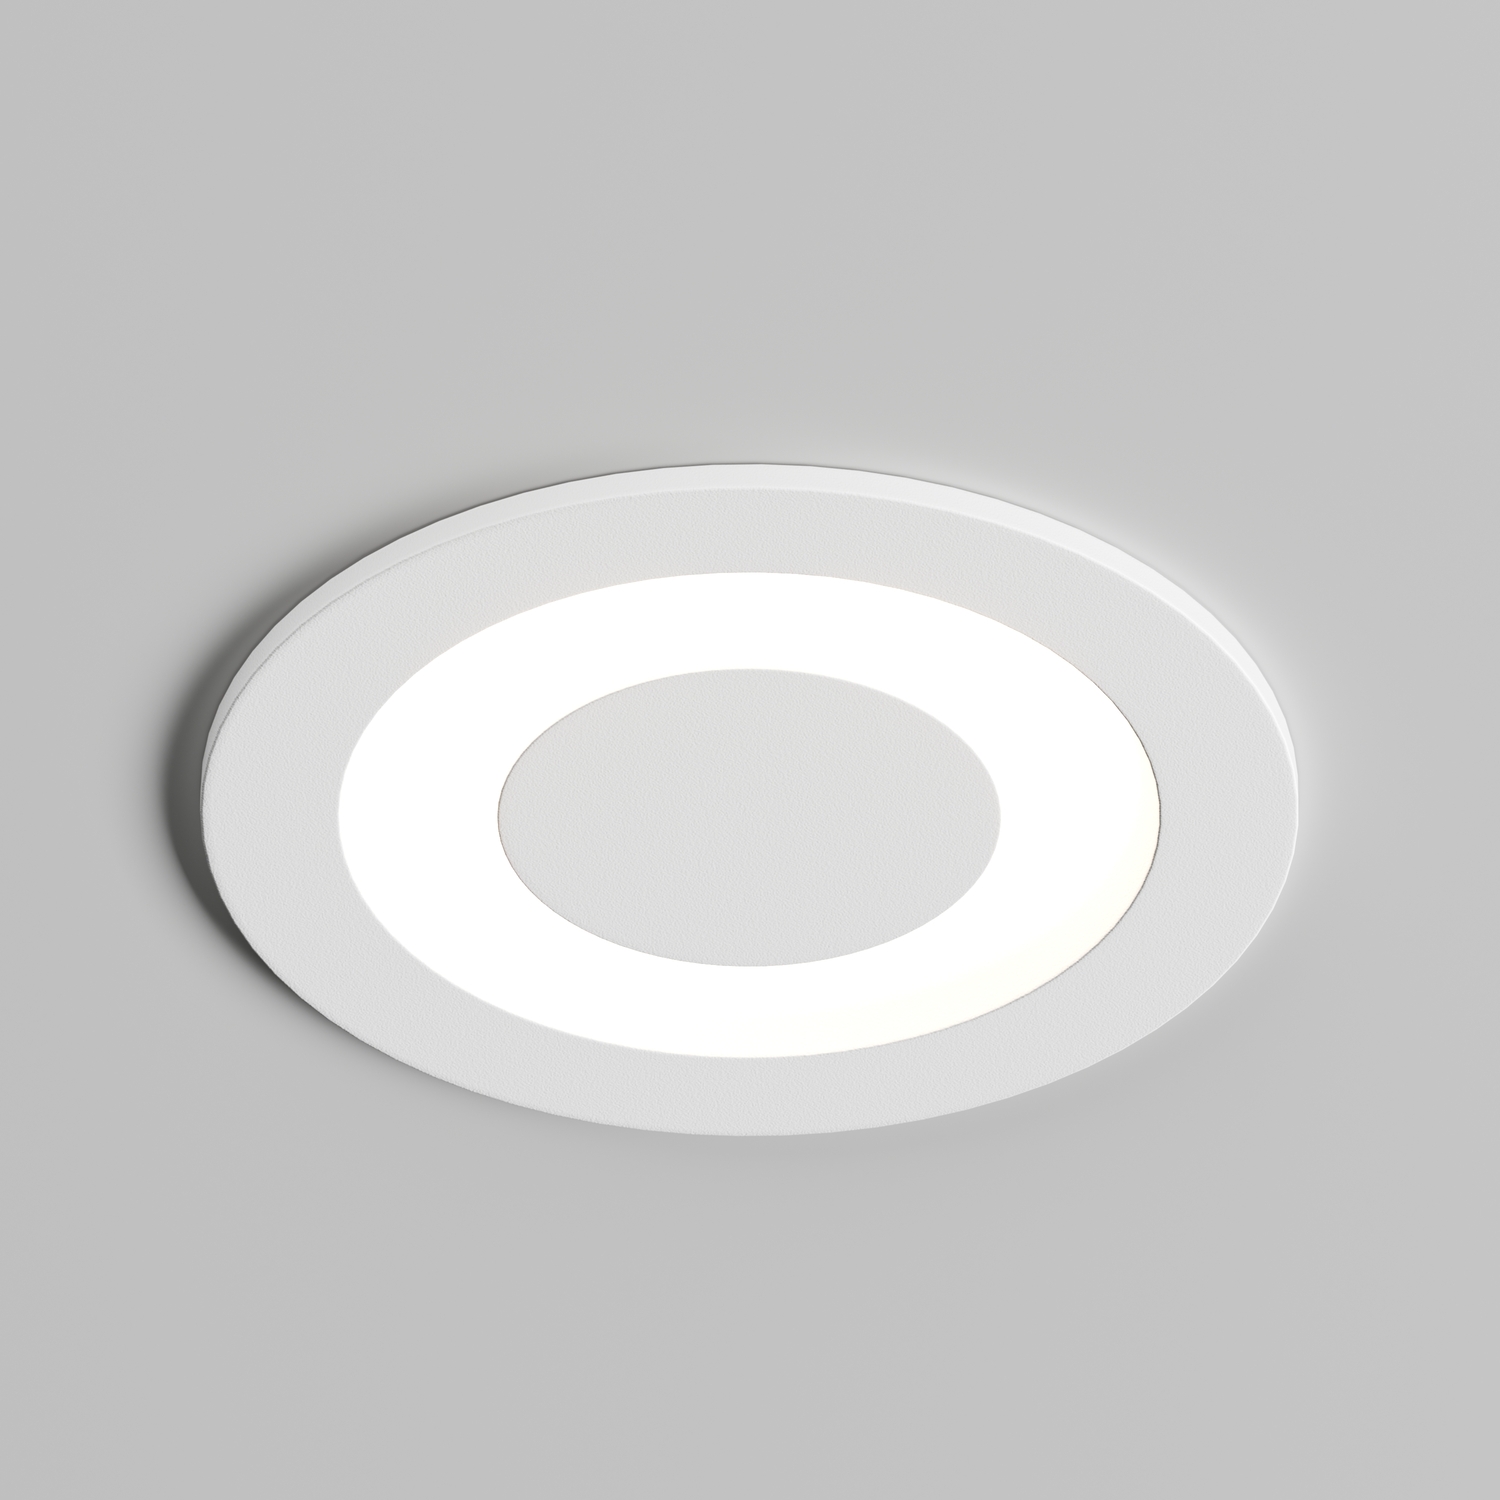 DK2700-WH Встраиваемый светильник, IP 20, 7 Вт, LED 3000, белый, алюминий